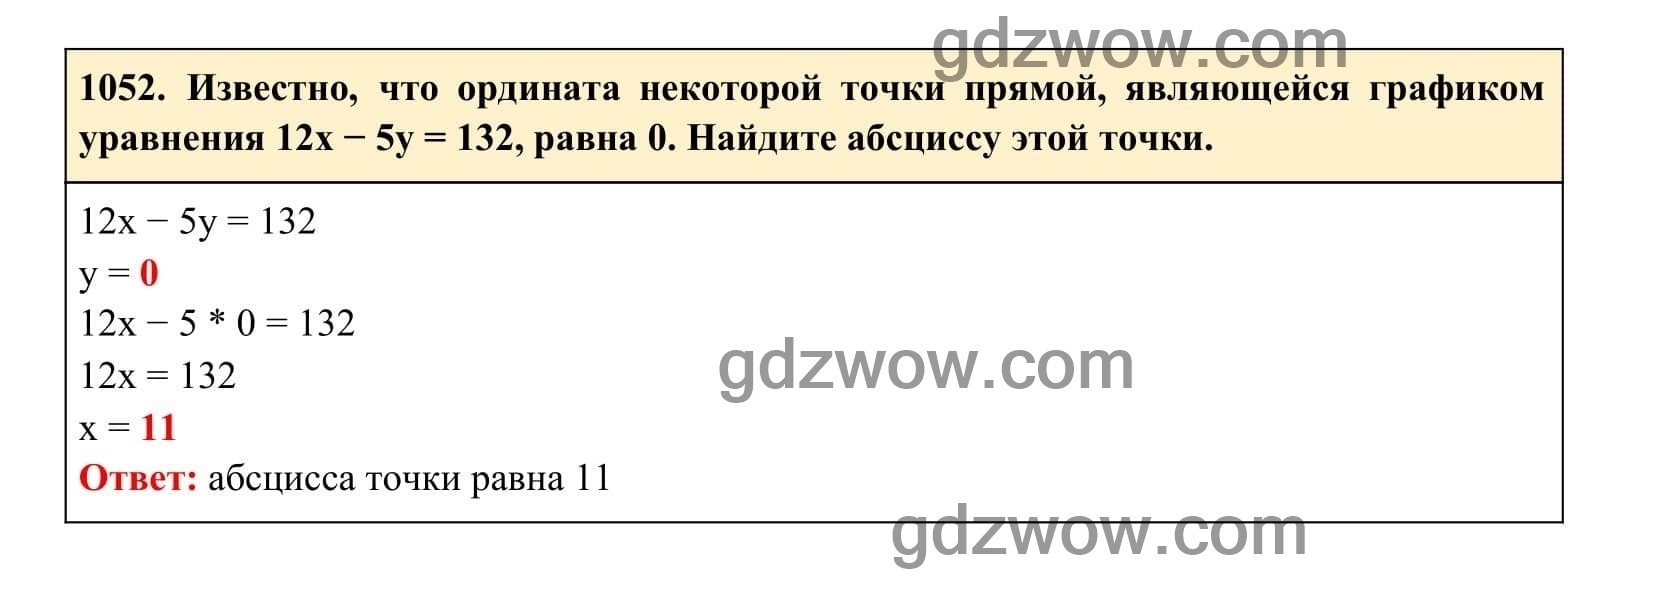 Упражнение 1052 - ГДЗ по Алгебре 7 класс Учебник Макарычев (решебник) - GDZwow